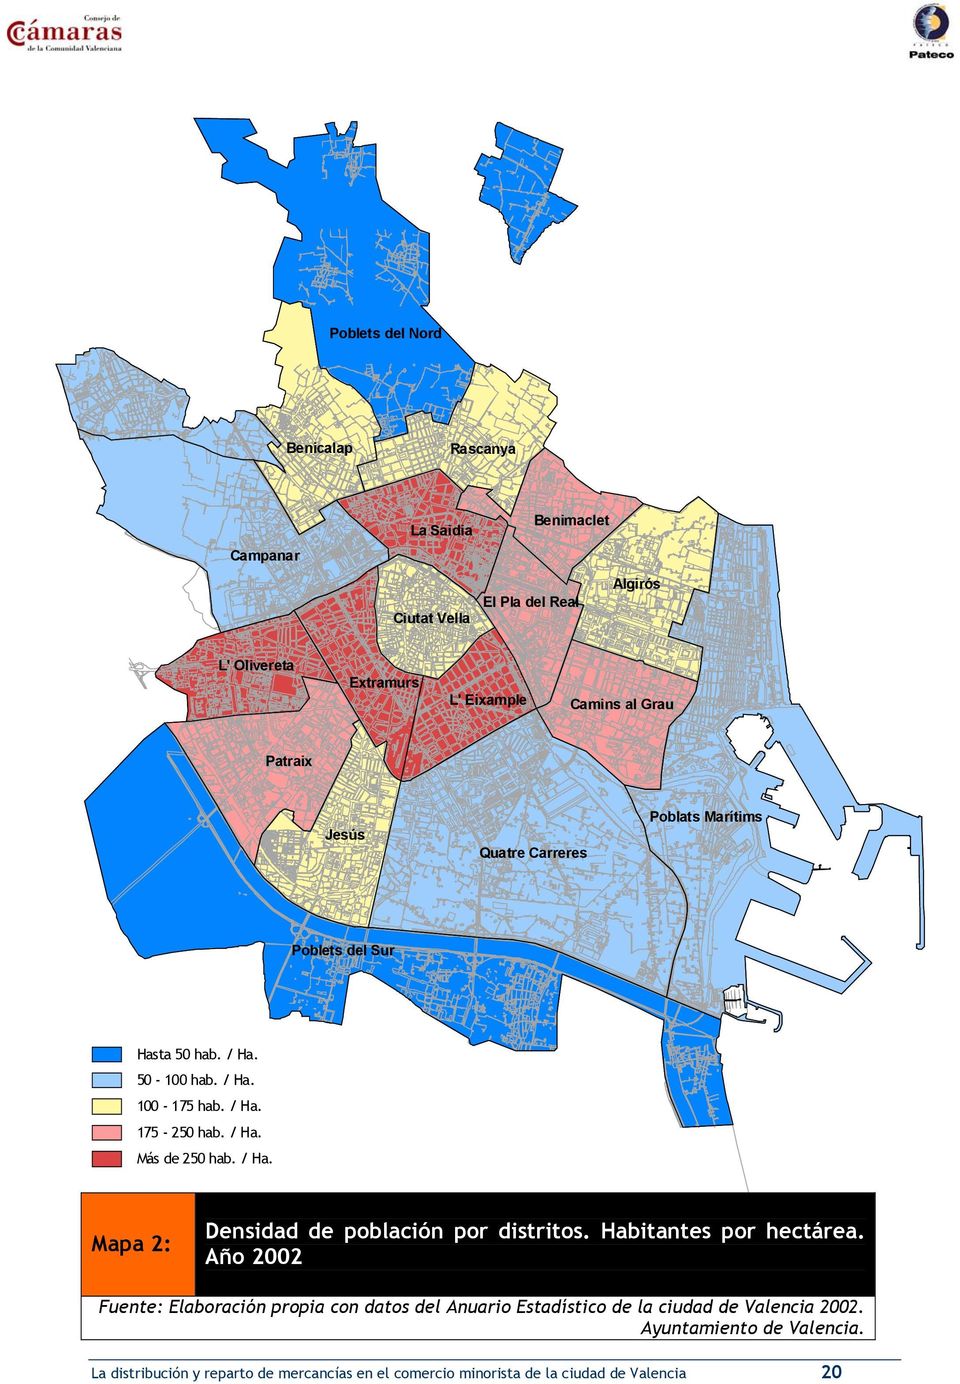 / Ha. Mapa 2: Densidad de población por distritos. Habitantes por hectárea.